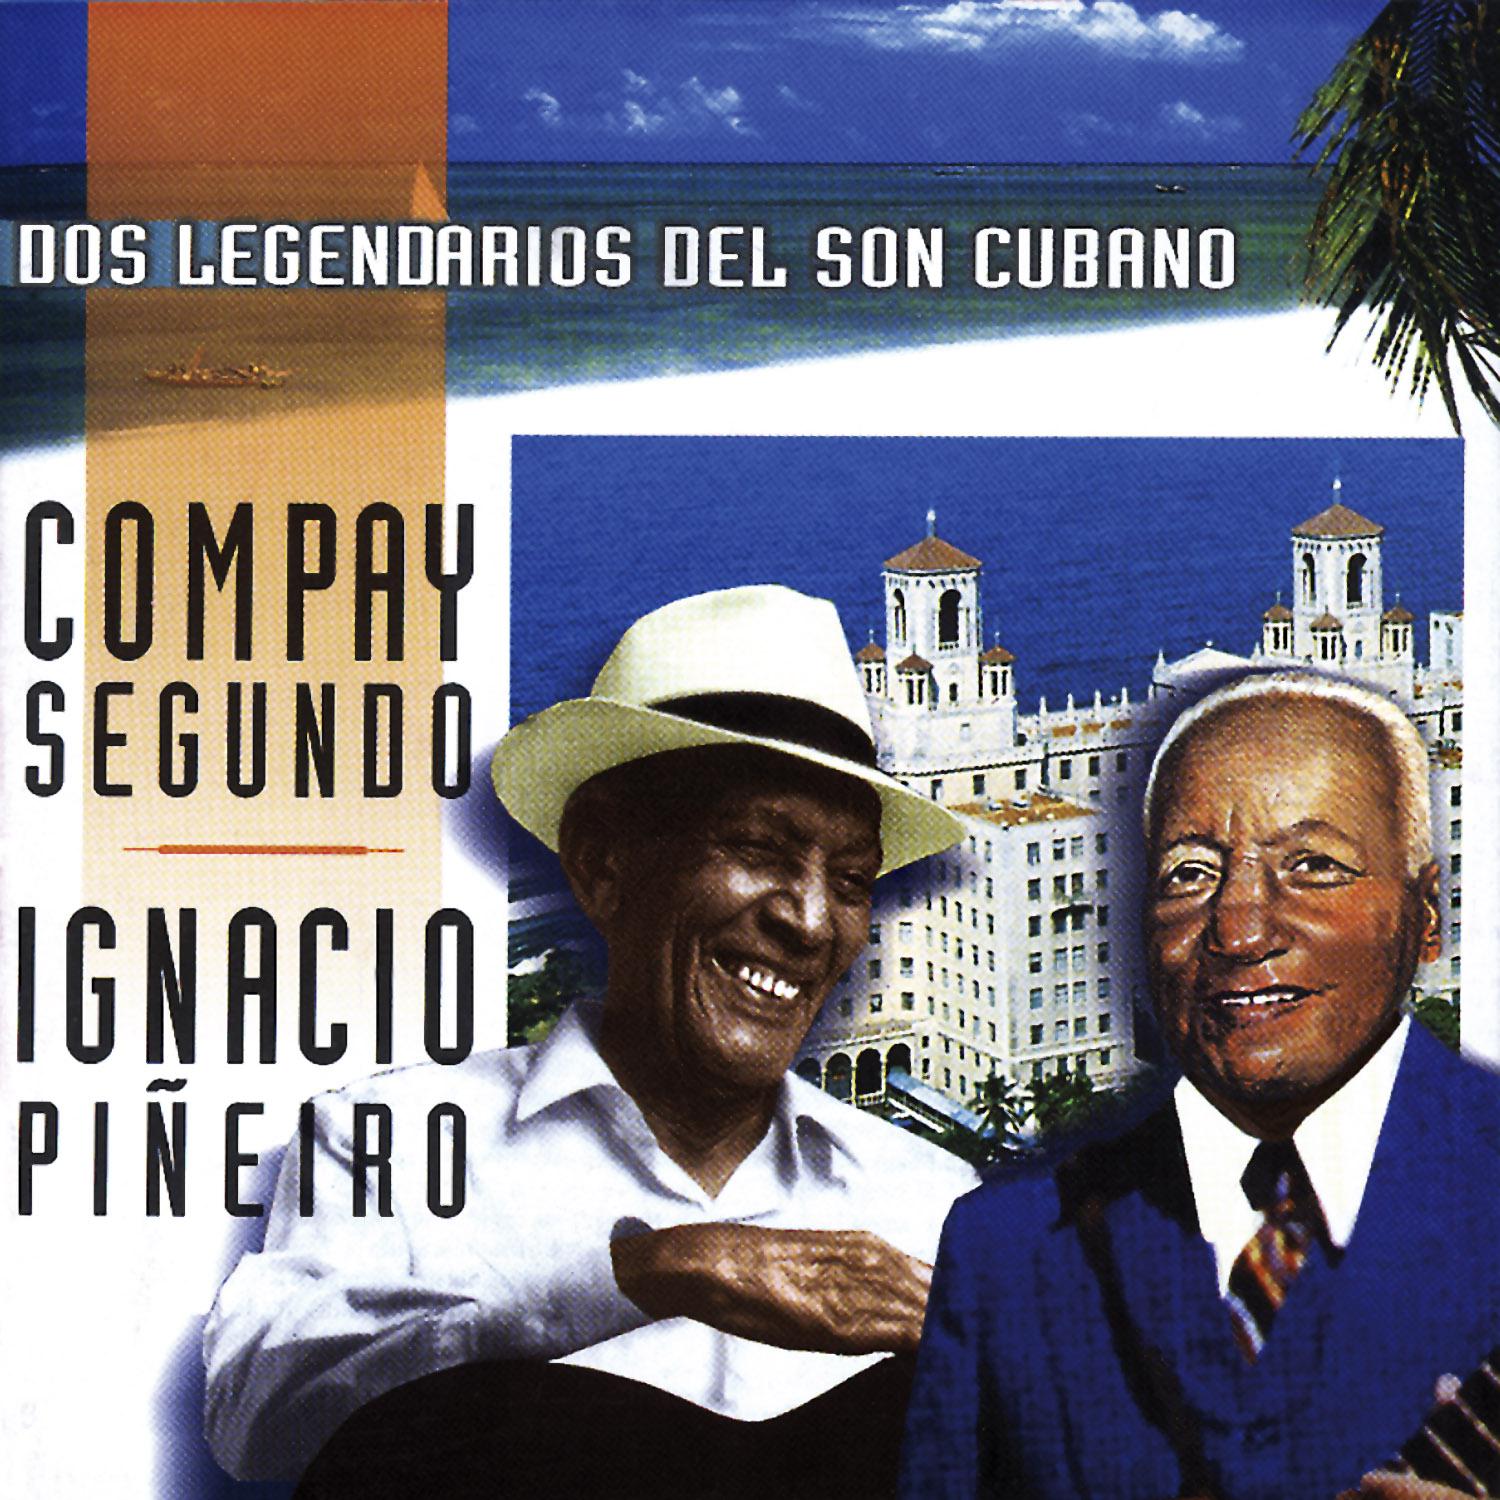 Dos Legendarios del Son Cubano